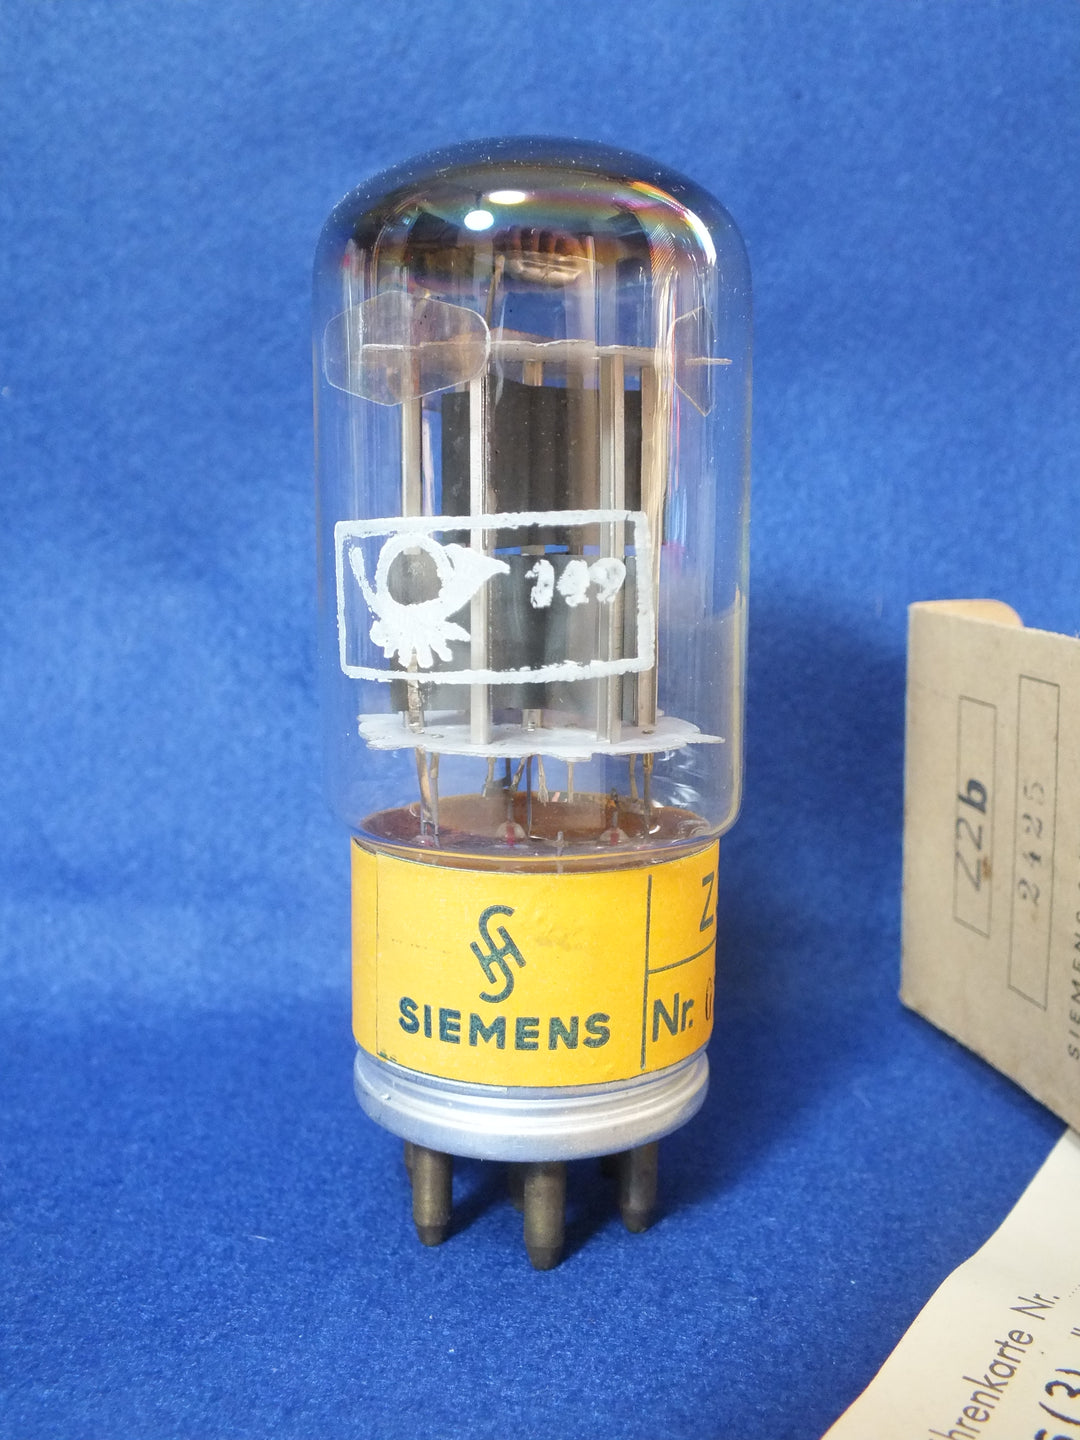 Siemens / Siemens Z2b rectifier tube